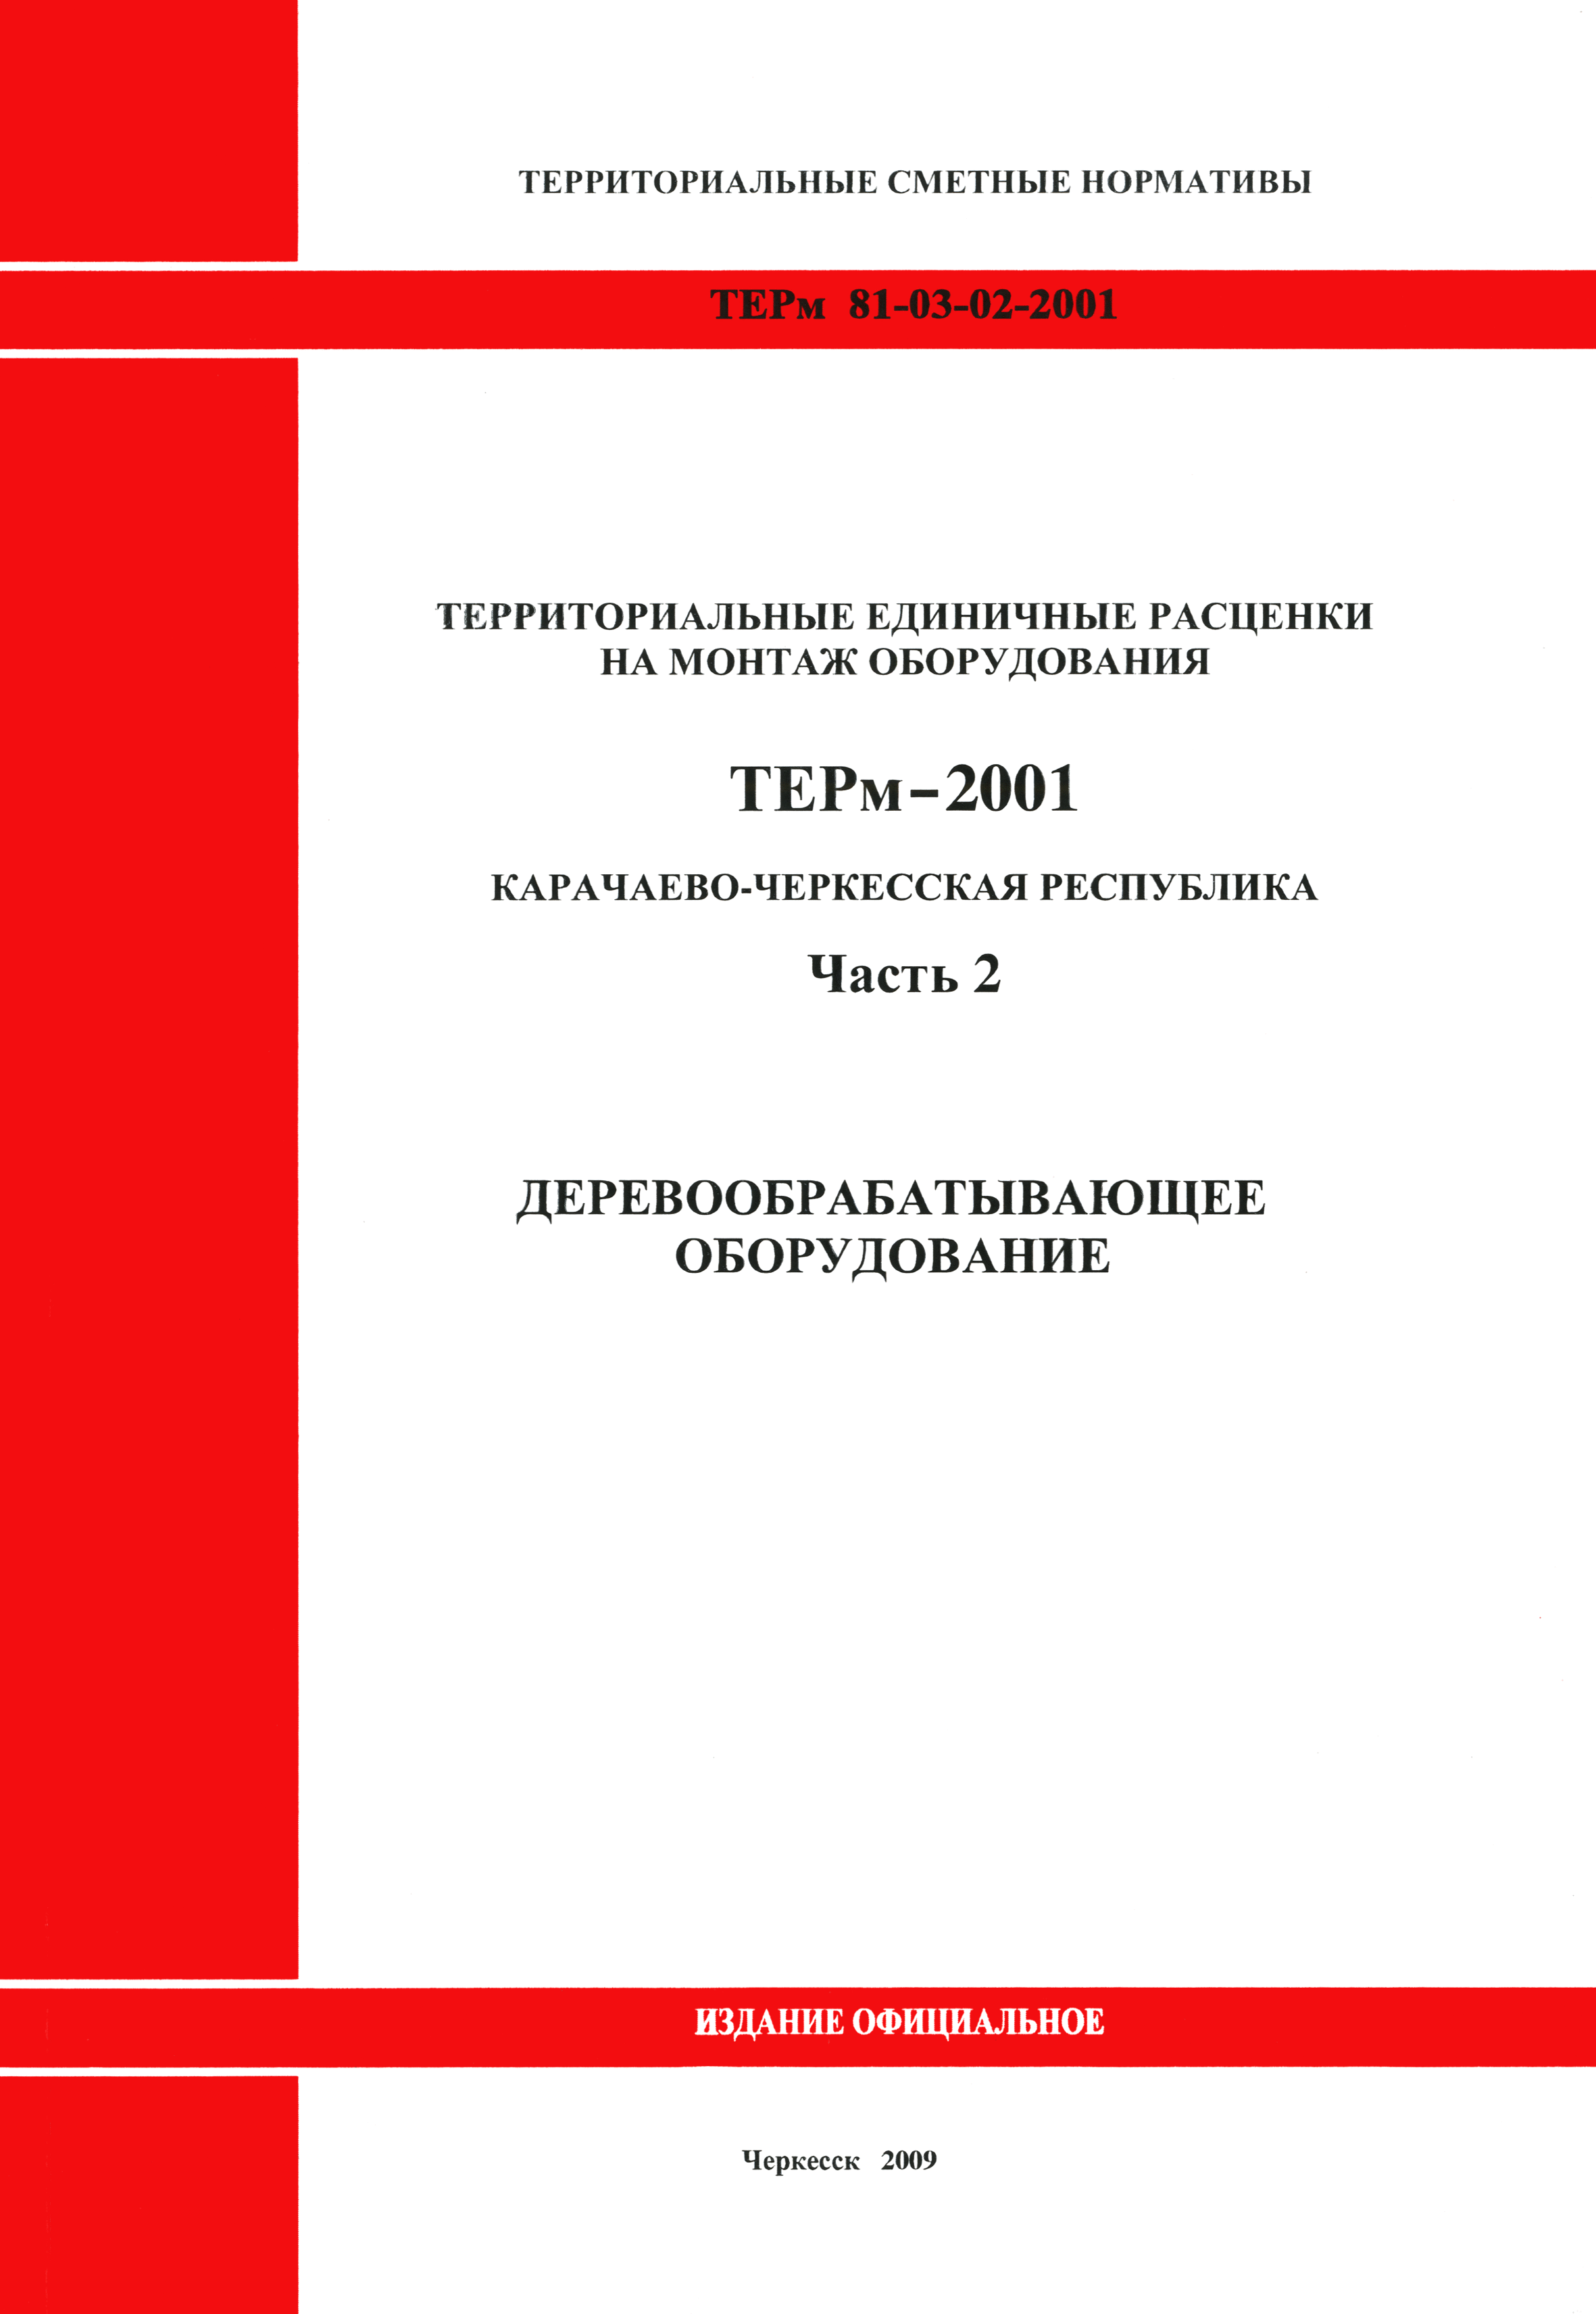 ТЕРм Карачаево-Черкесская Республика 02-2001